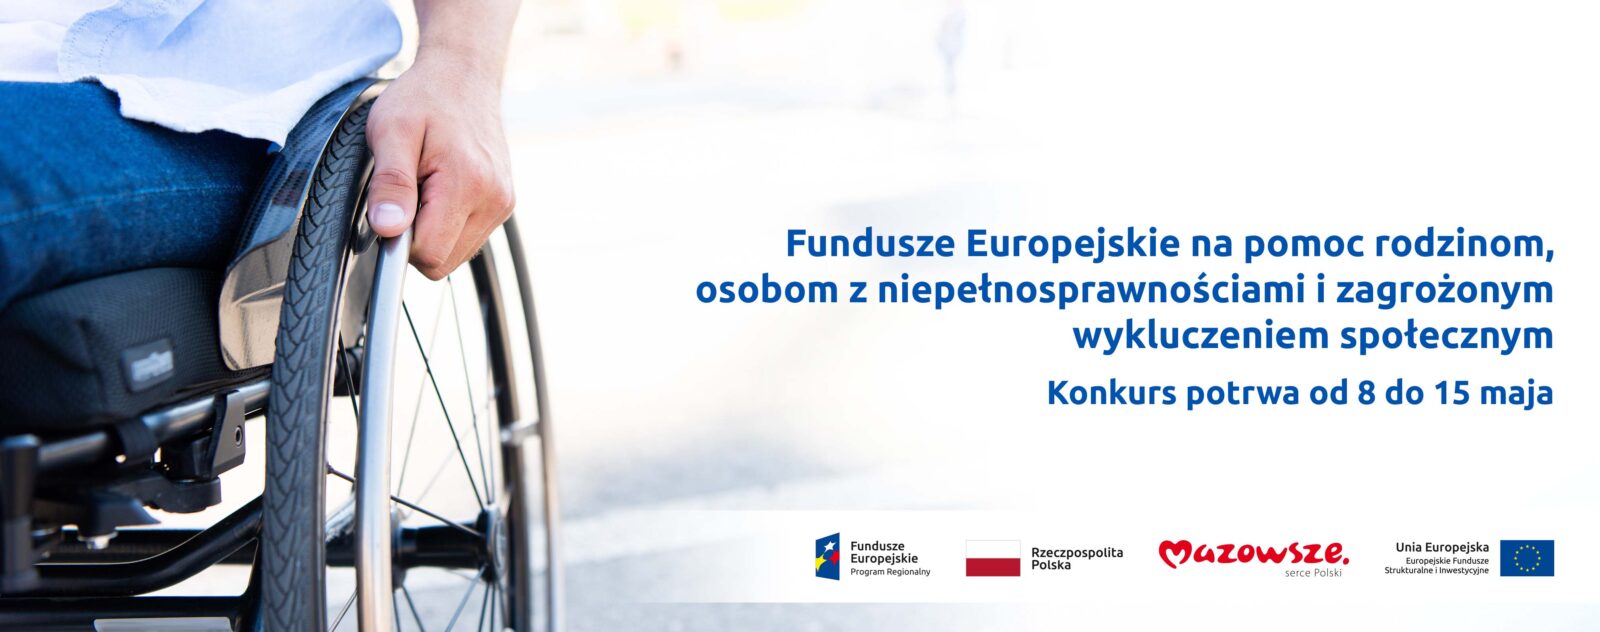 Plakat - Fundusze Europejskie na pomoc rodzinom, osobom z niepełnosprawnościami i zagrożonym wykluczeniem społecznym